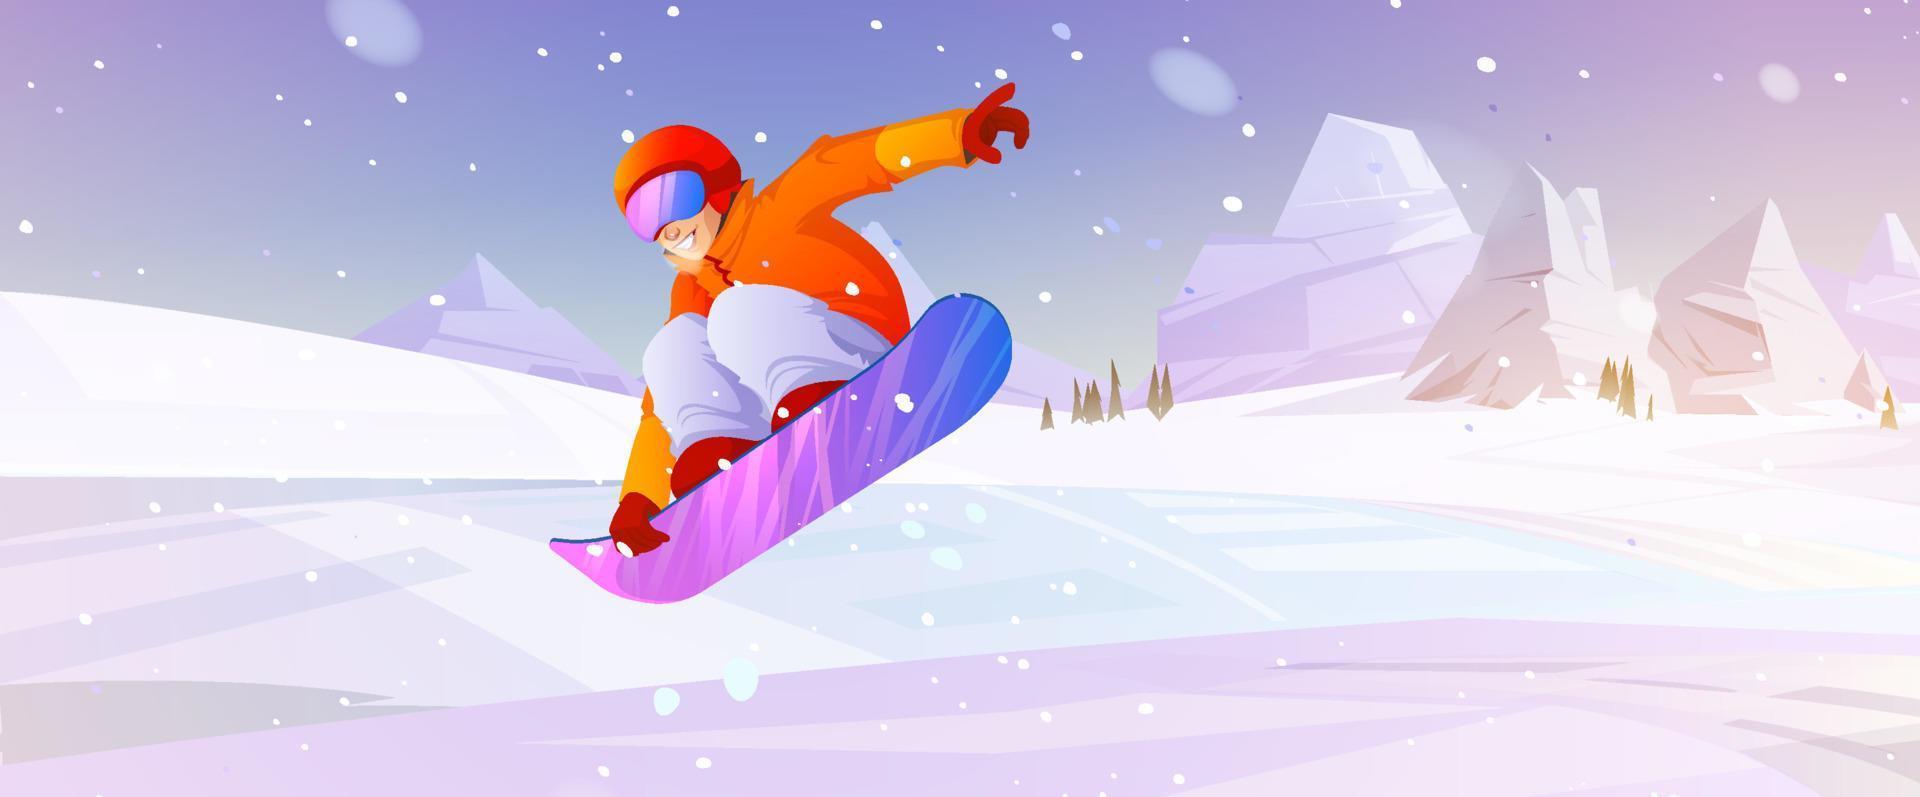 snowboard extremo esporte de inverno atividade ao ar livre vetor